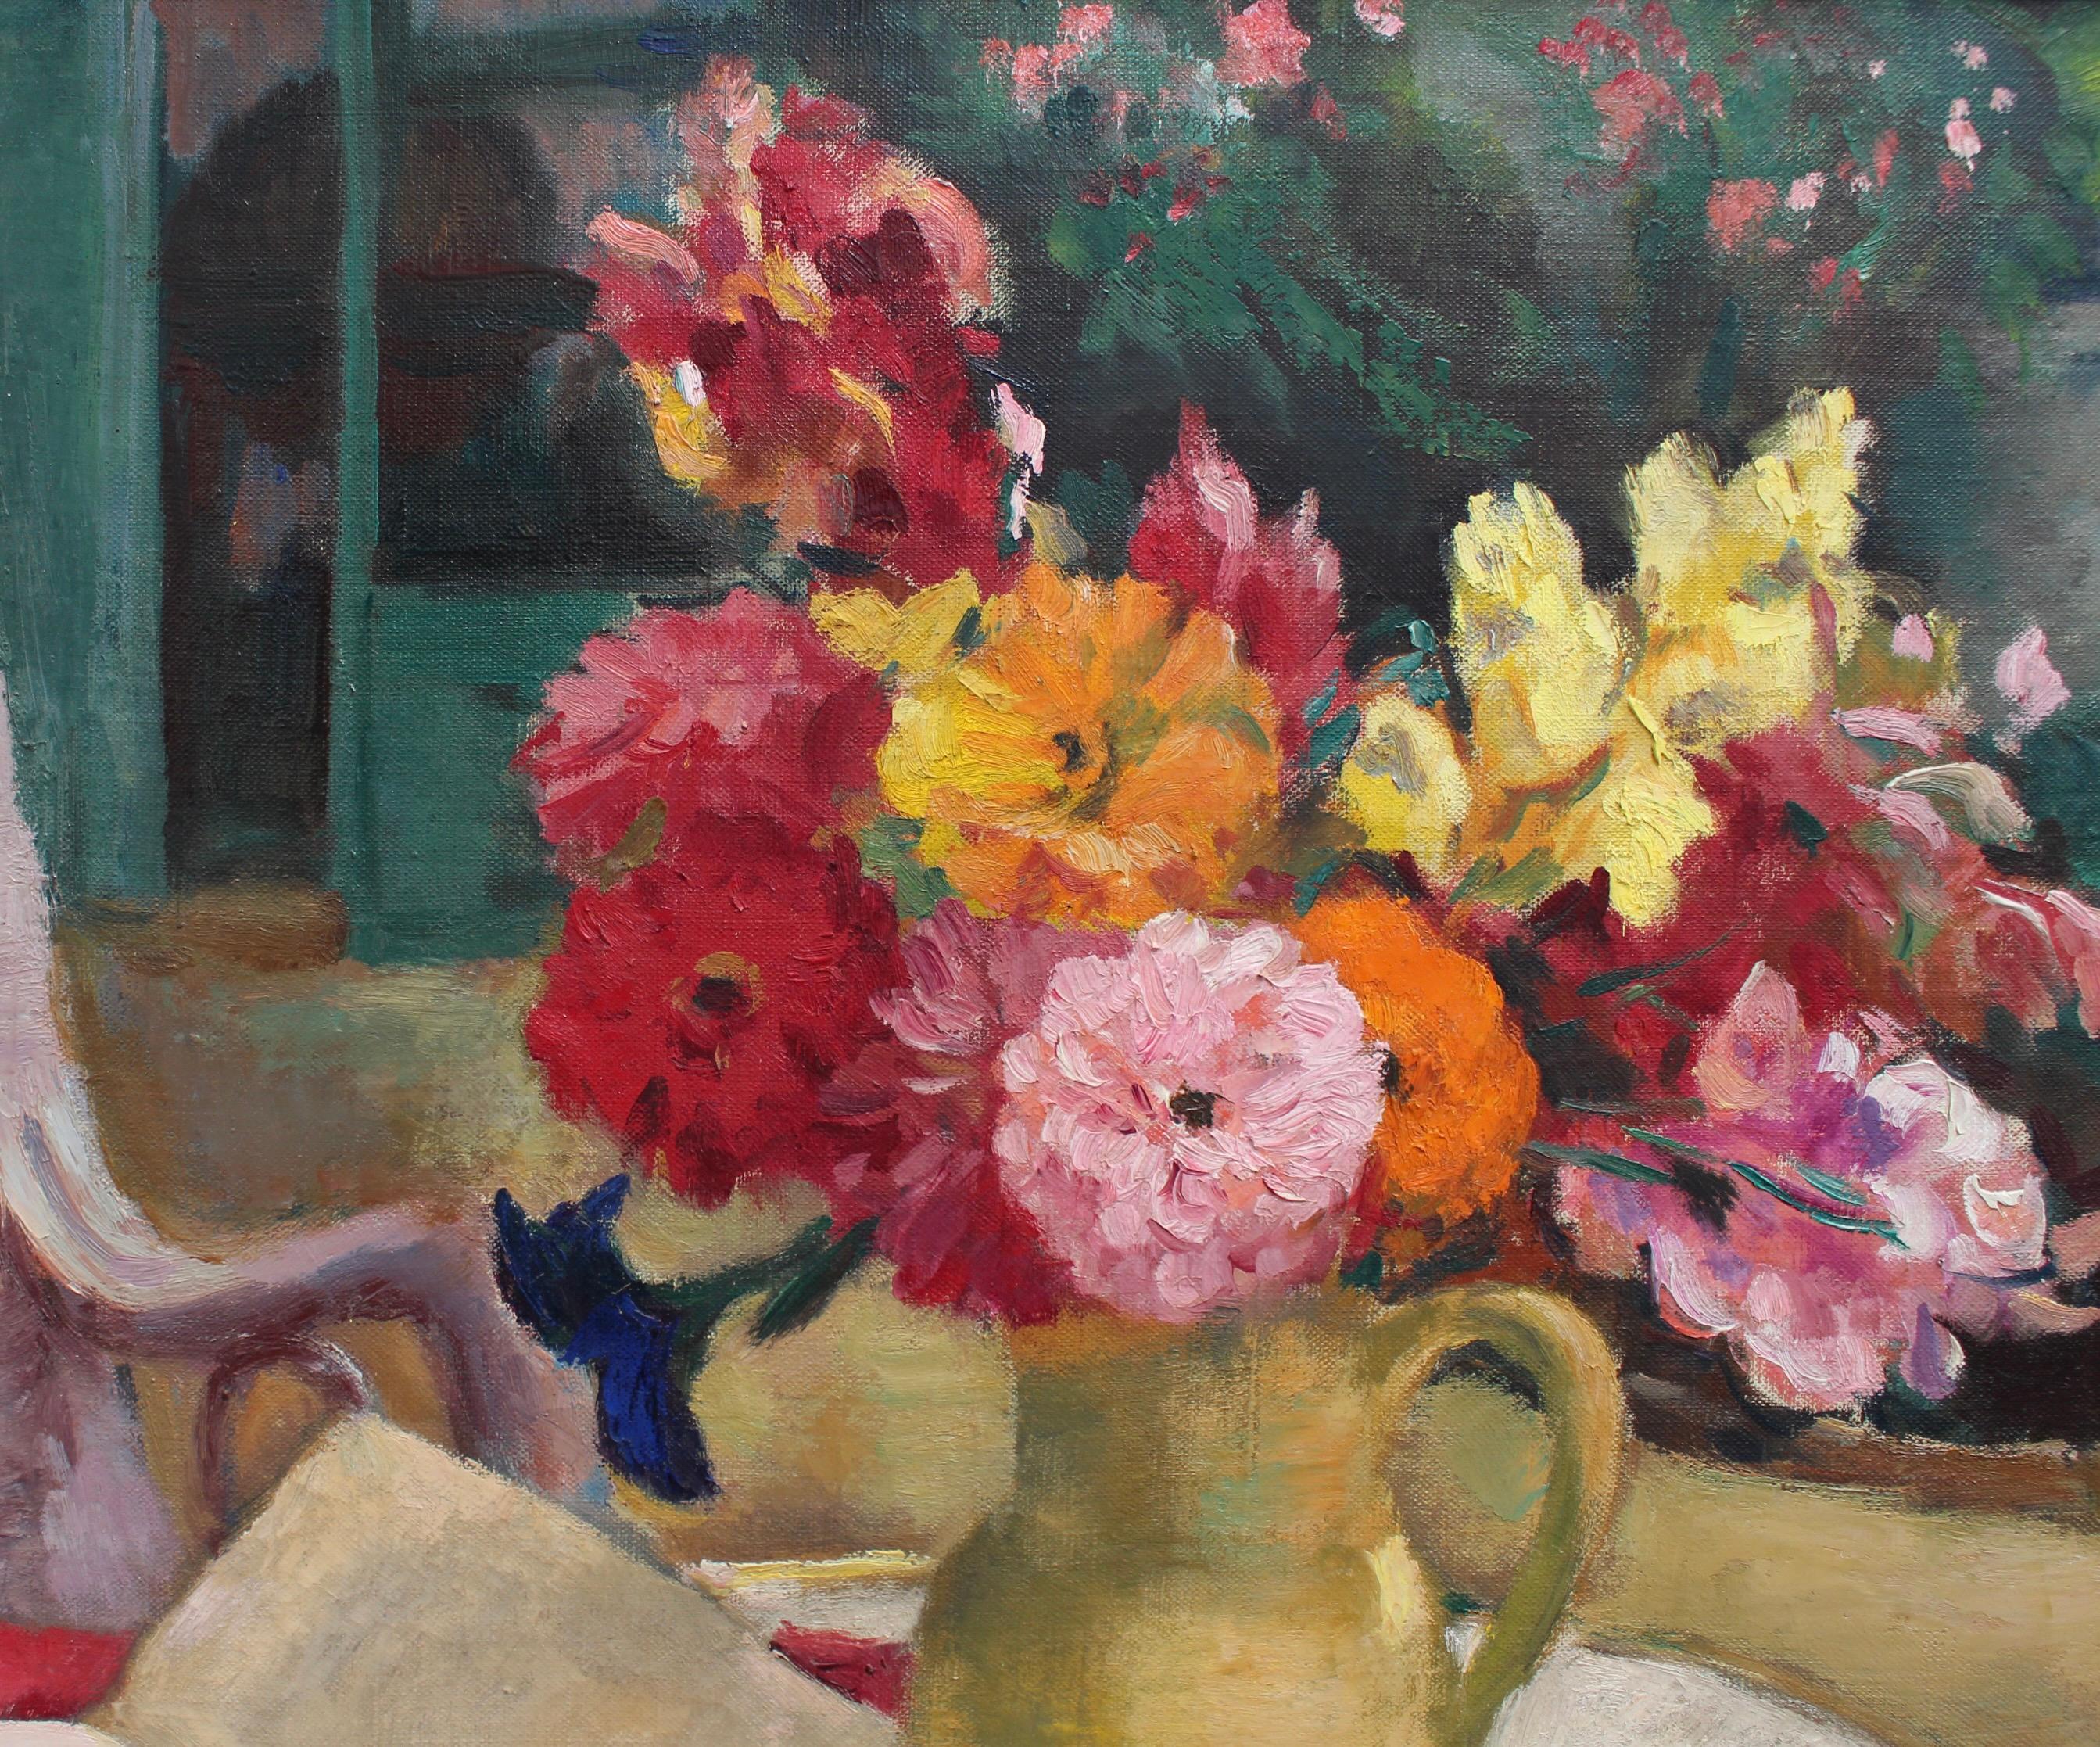 la cruche jaune, huile sur toile, par Charles Kvapil (1939). Peintre prolifique de bouquets, l'artiste a créé des dizaines de tableaux ayant pour sujet des fleurs. Et bien sûr, comment ne pas aimer les bouquets de fleurs dans sa maison ? Elles